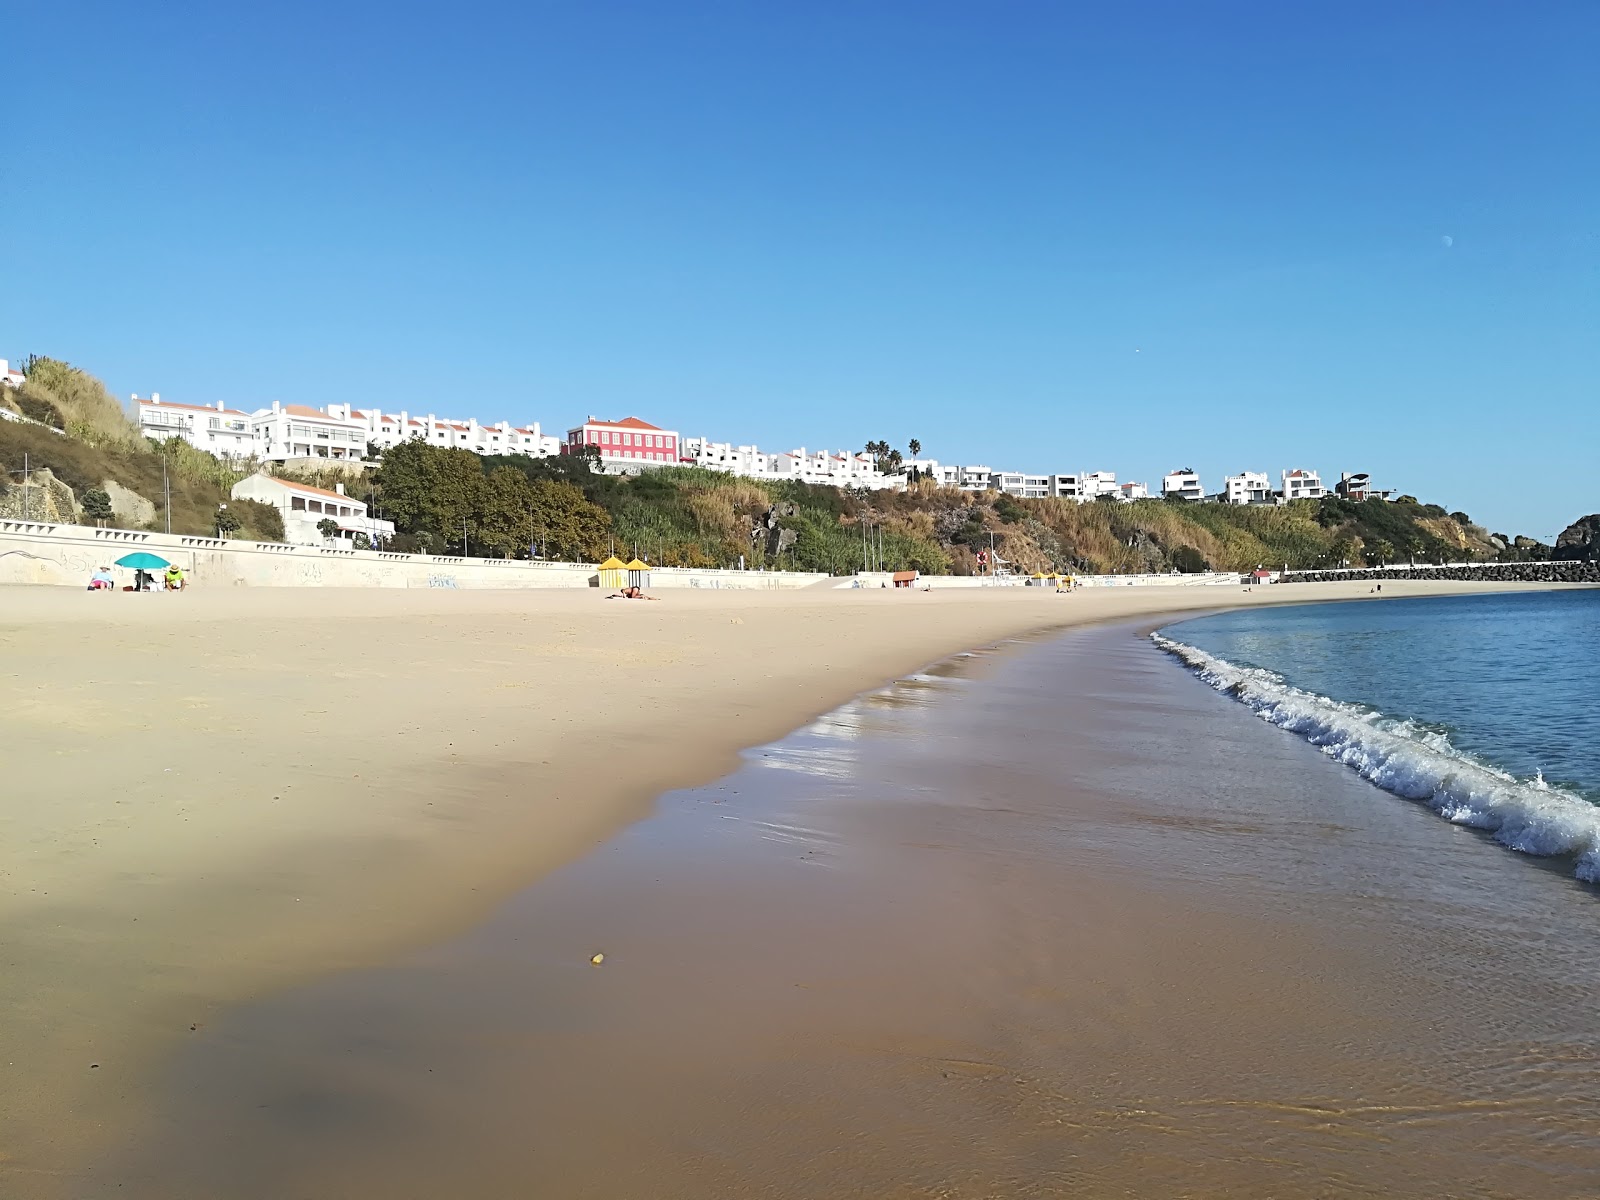 Praia Vasco da Gama'in fotoğrafı geniş ile birlikte